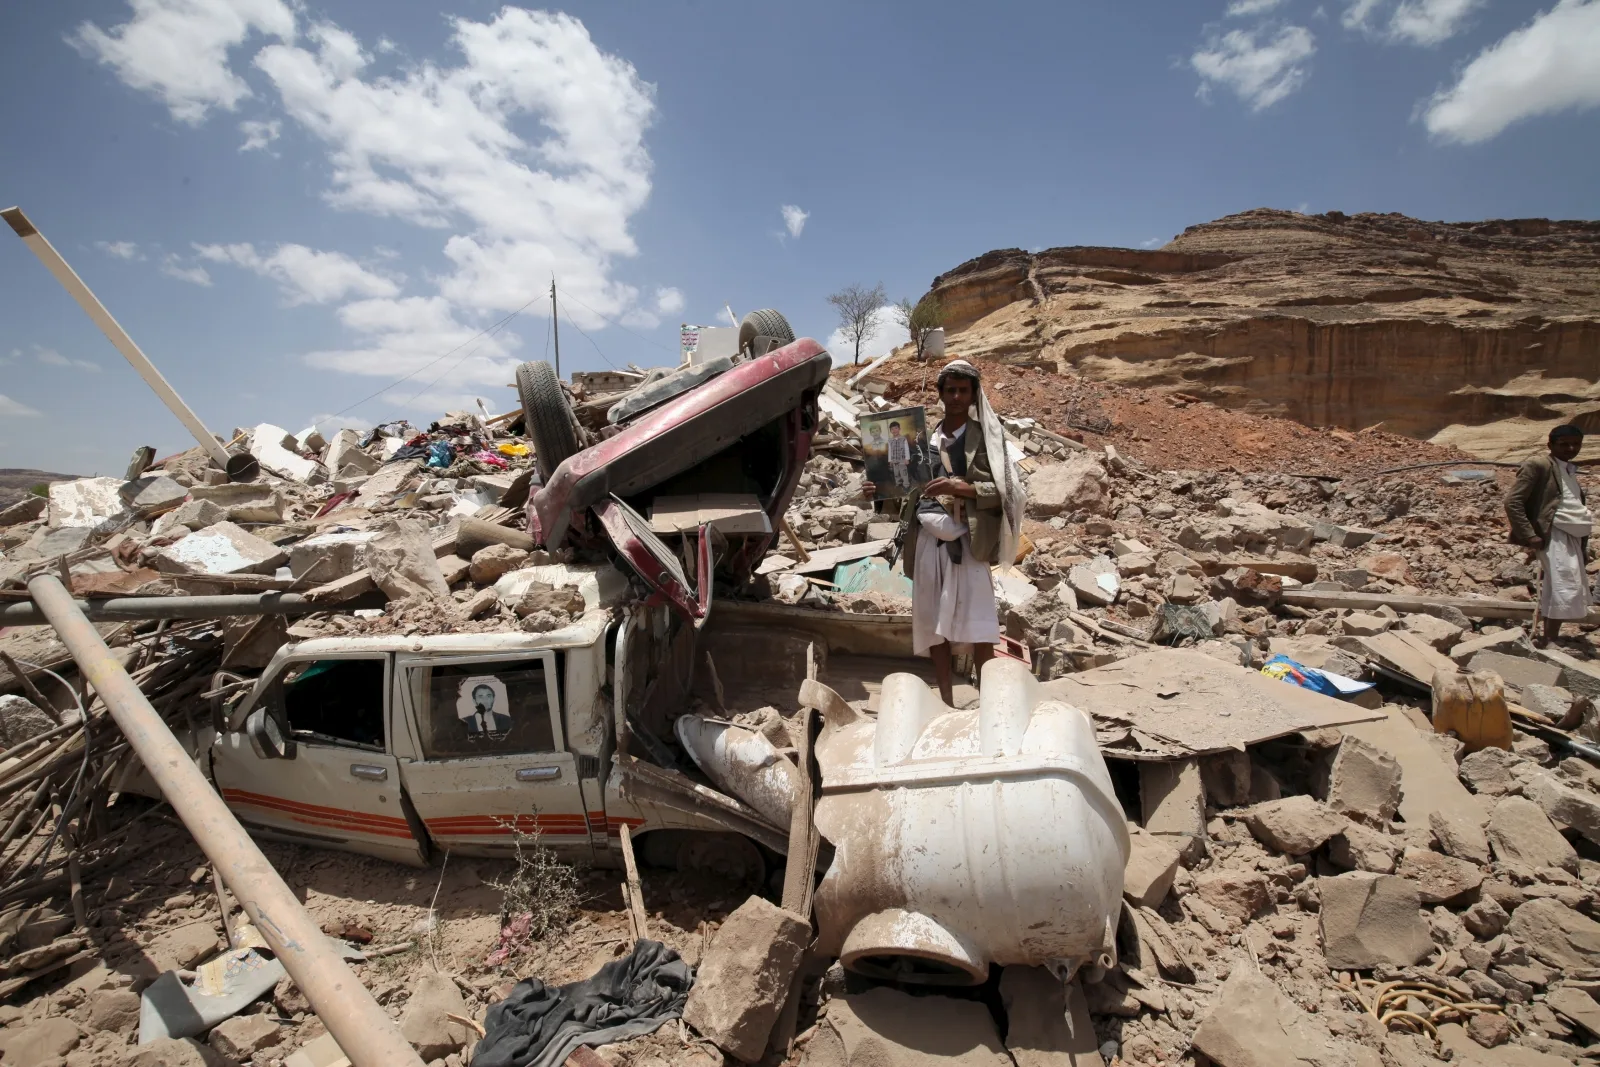 yemen-crisis